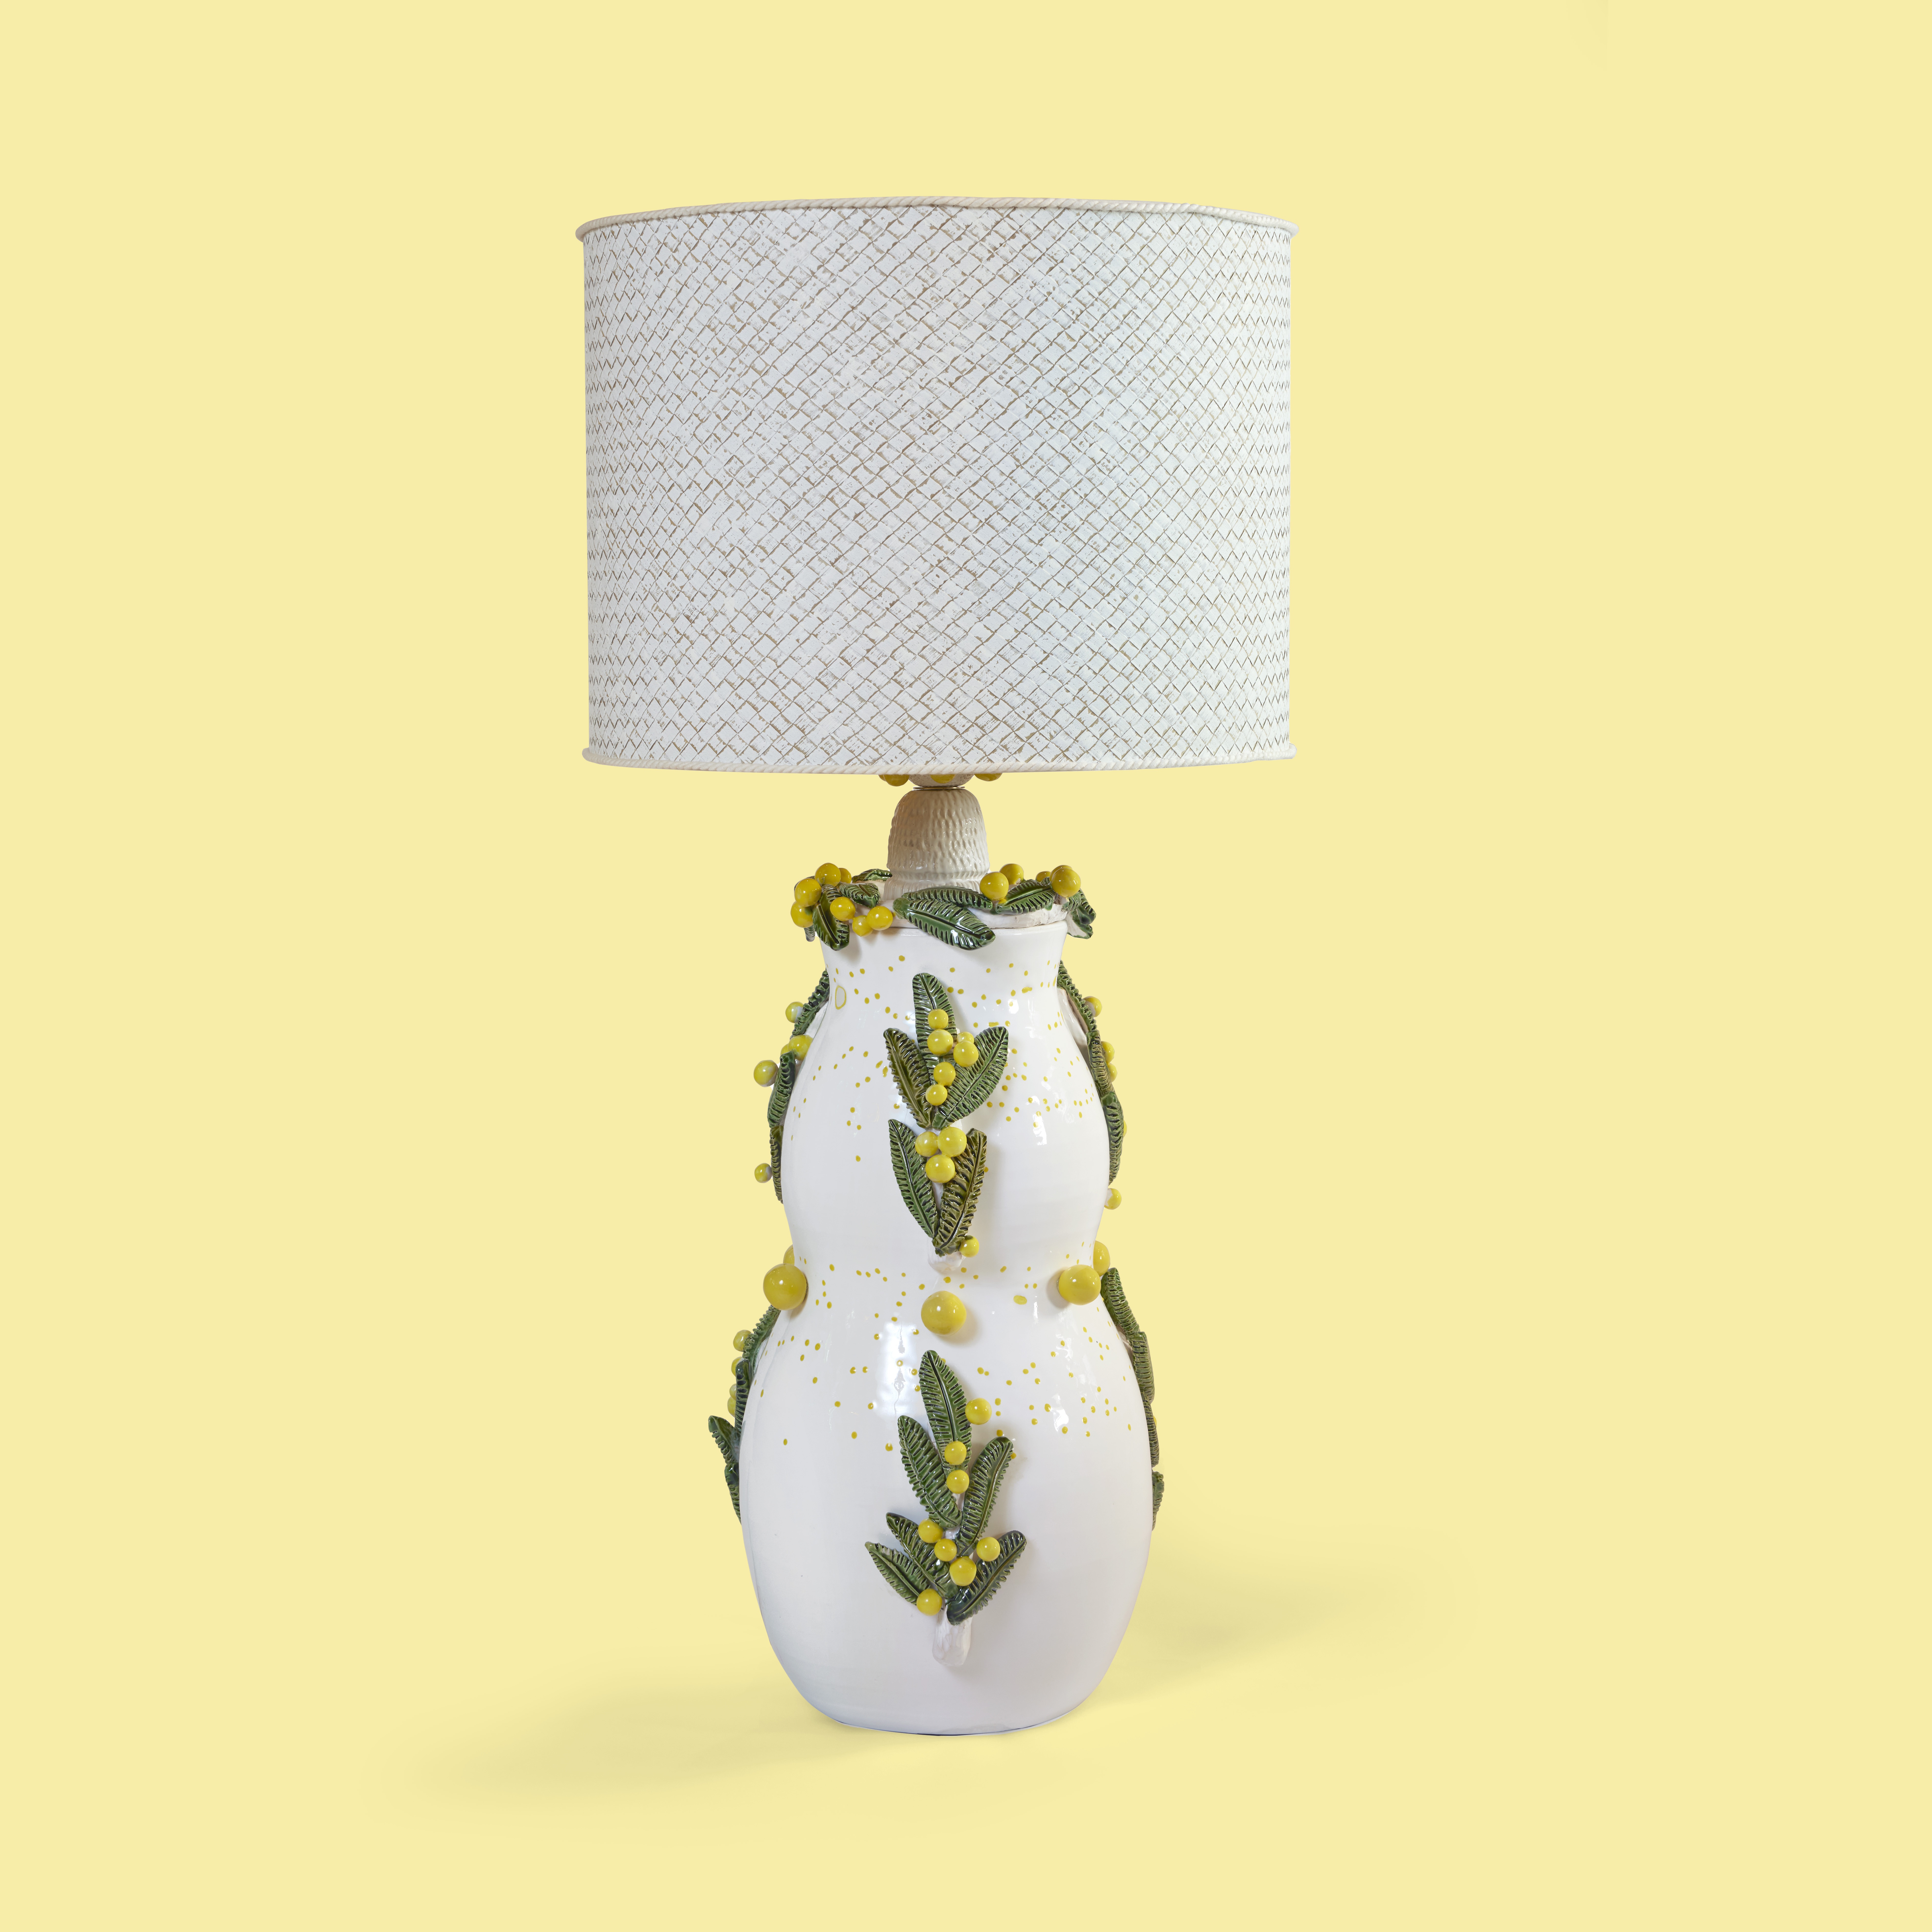 Mimosa lamp